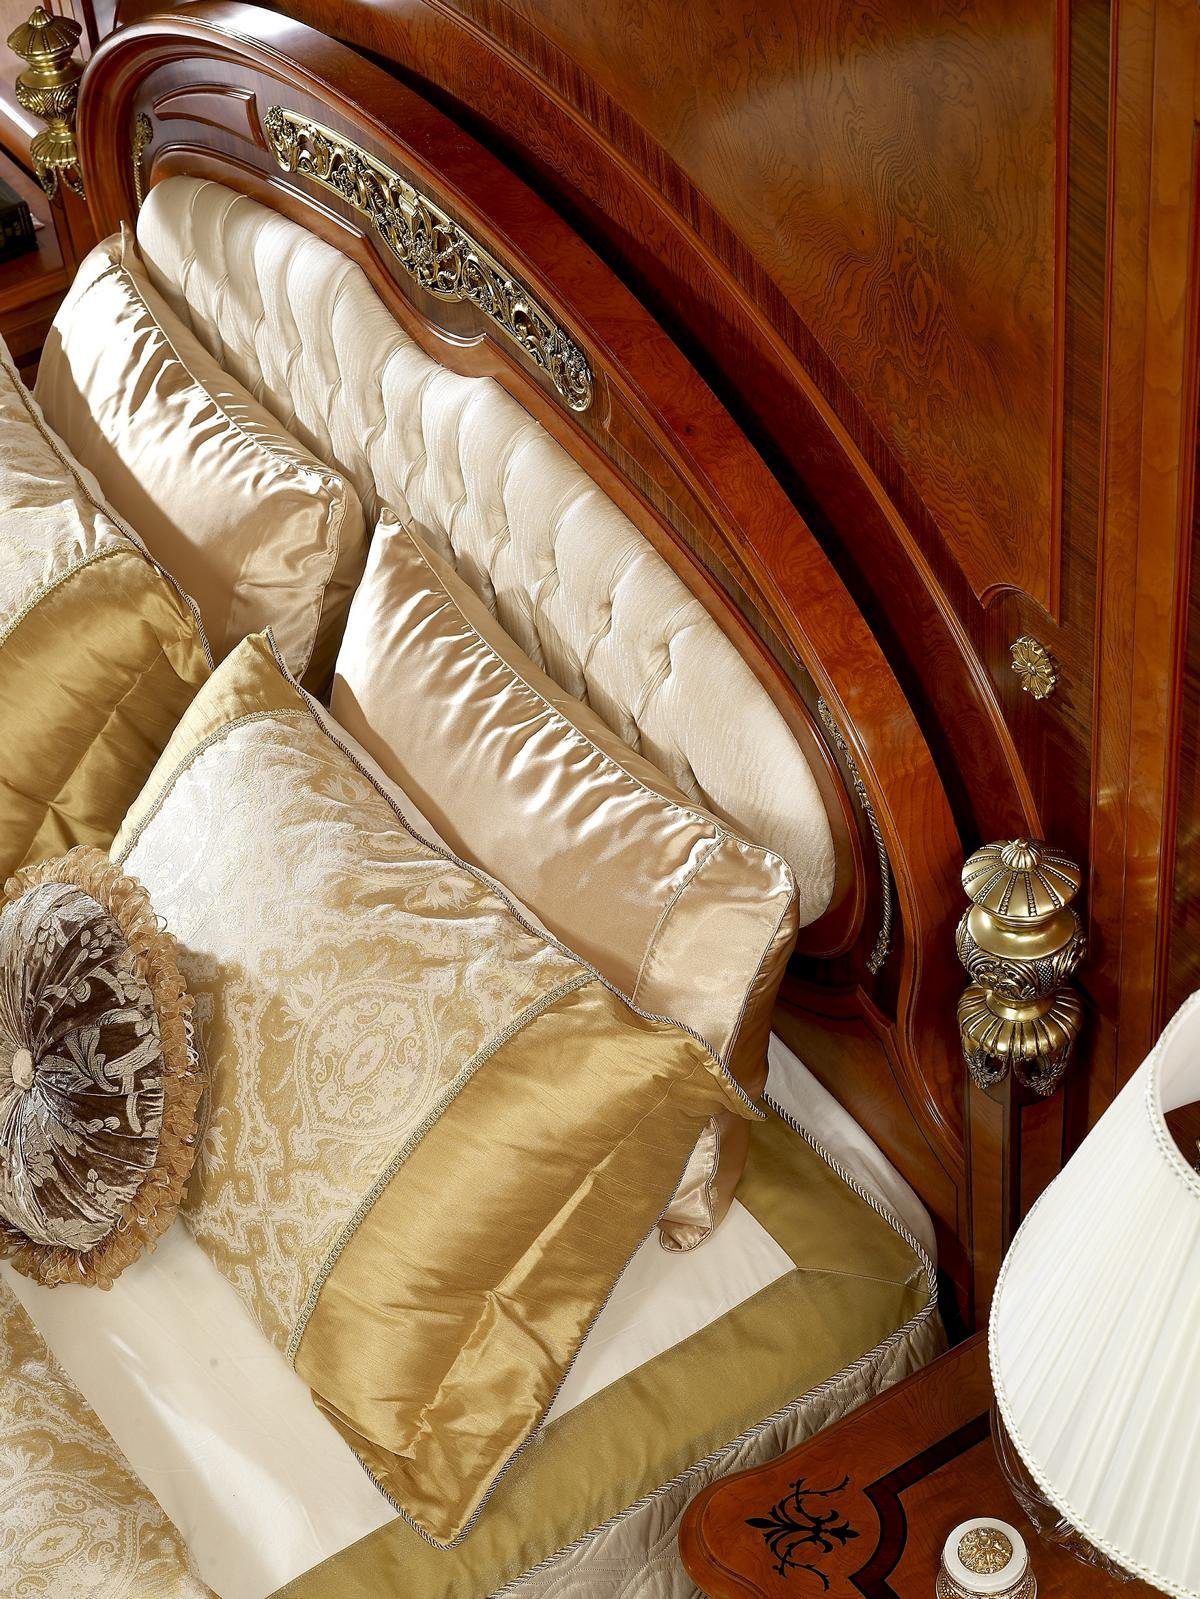 Bett Bett, Handarbeit Echte Doppelbett JVmoebel Leder Schlafzimmer Holz Luixus